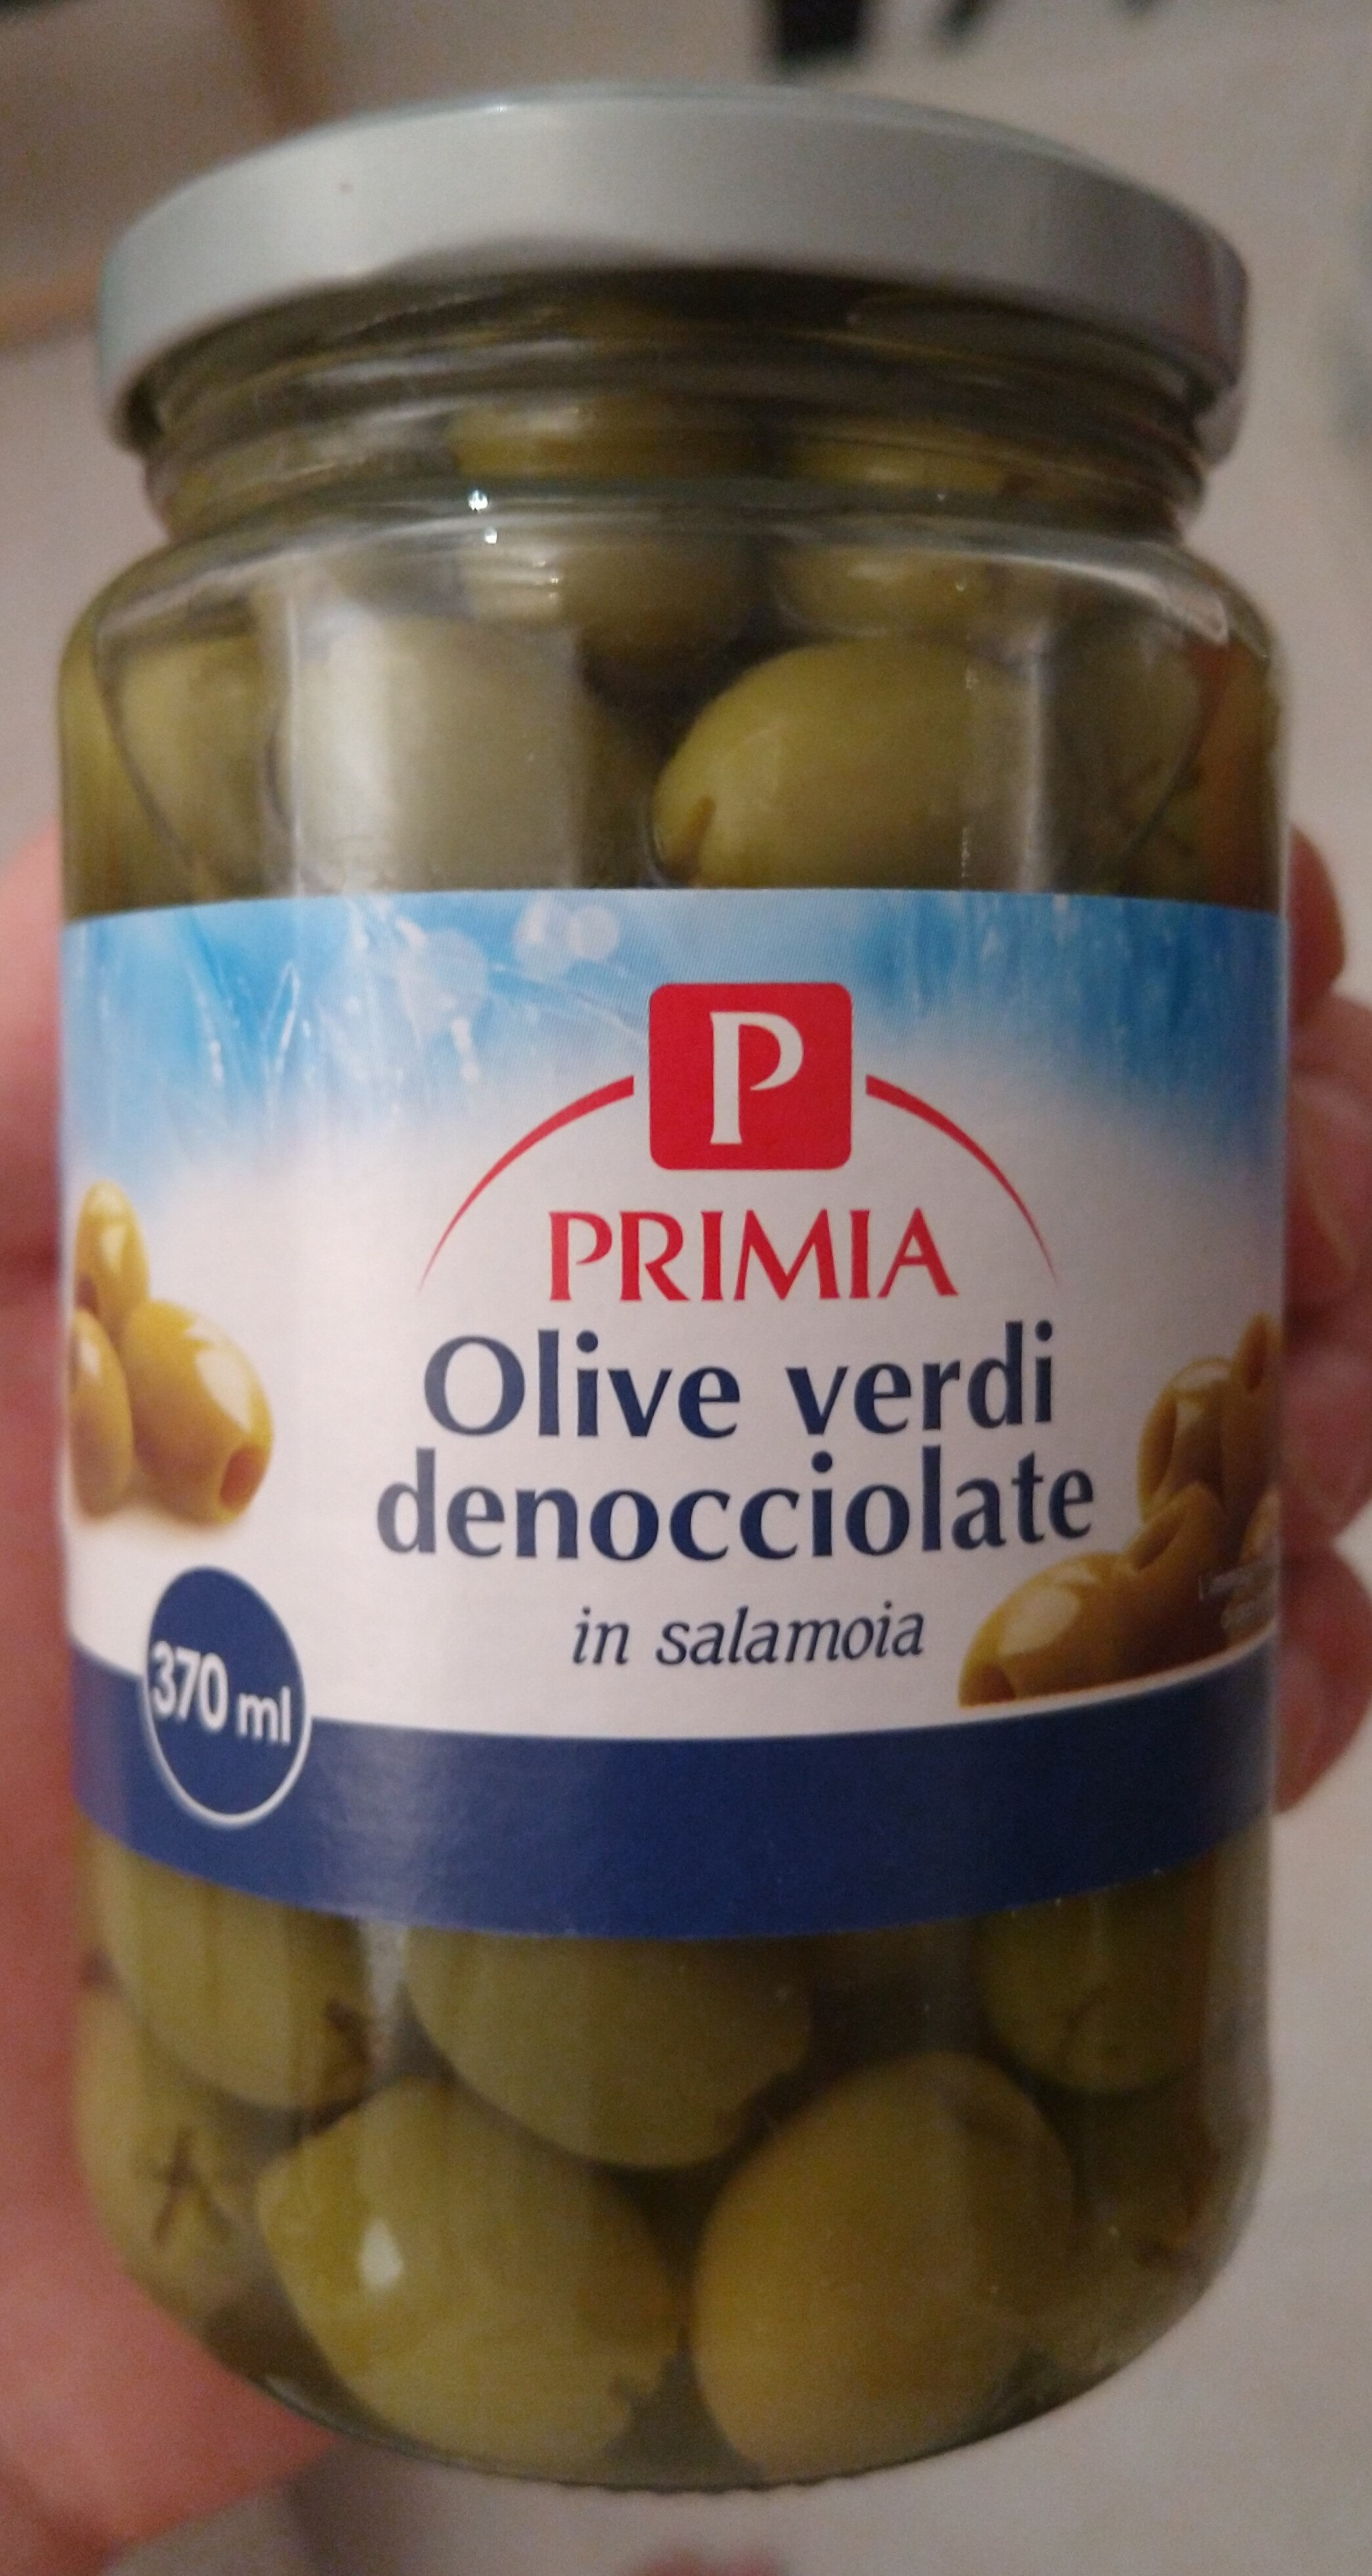 Olive verdi denocciolate - Product - it